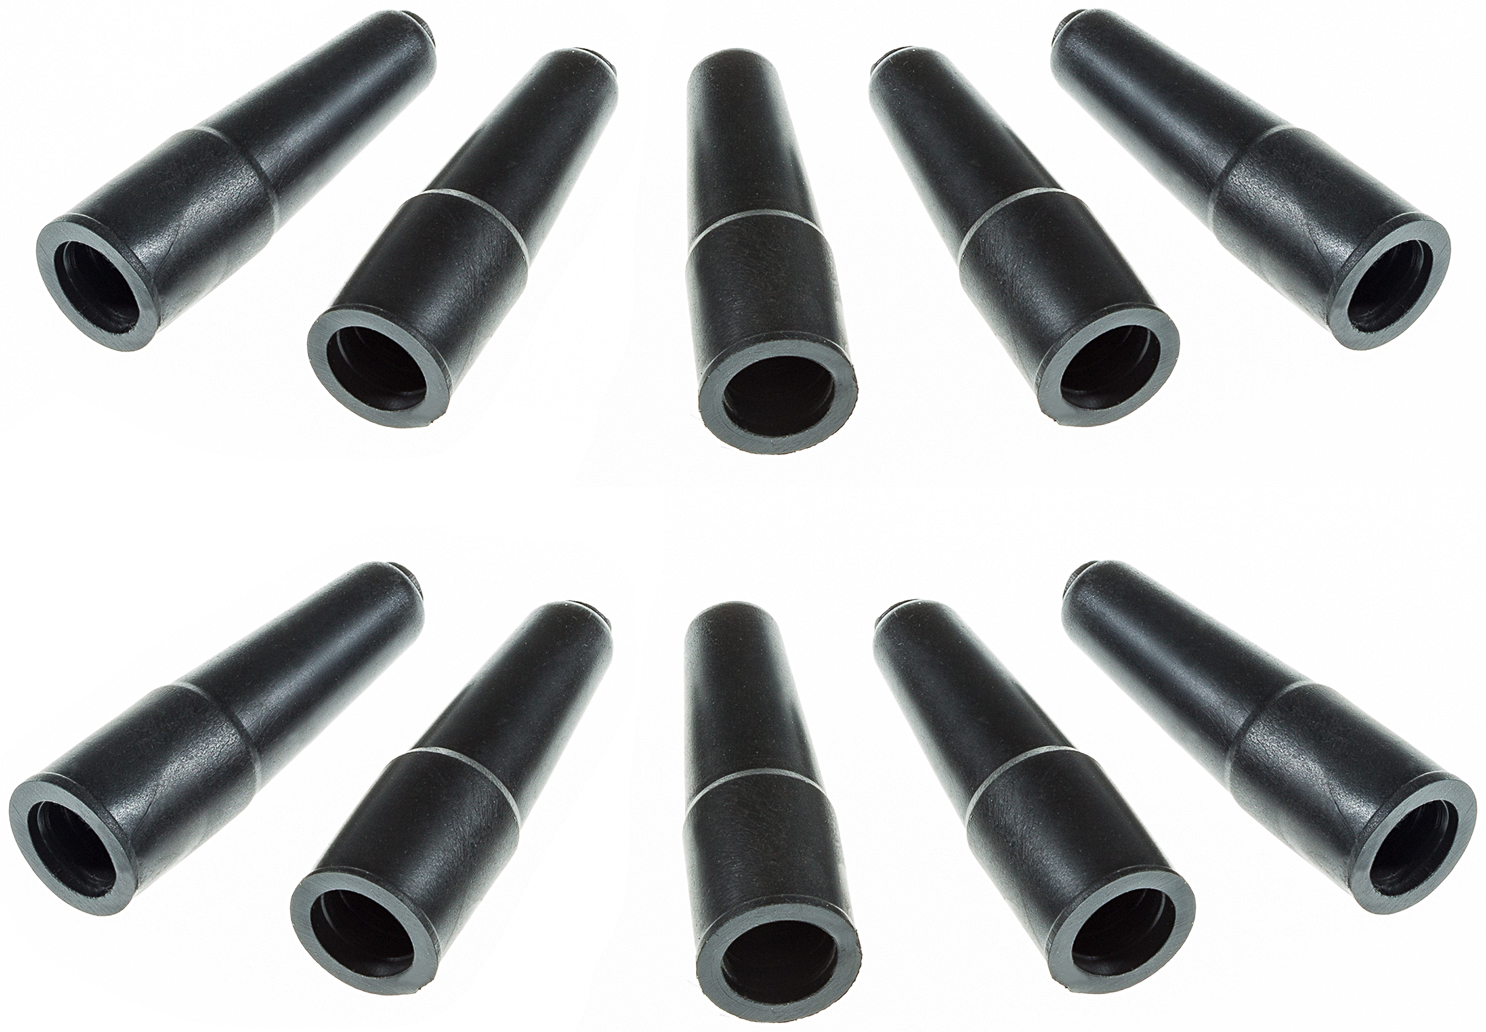 Gummitüllen Sat-Schutz F-Stecker / Koaxialkabel 7-8,2mm, 10 Stck